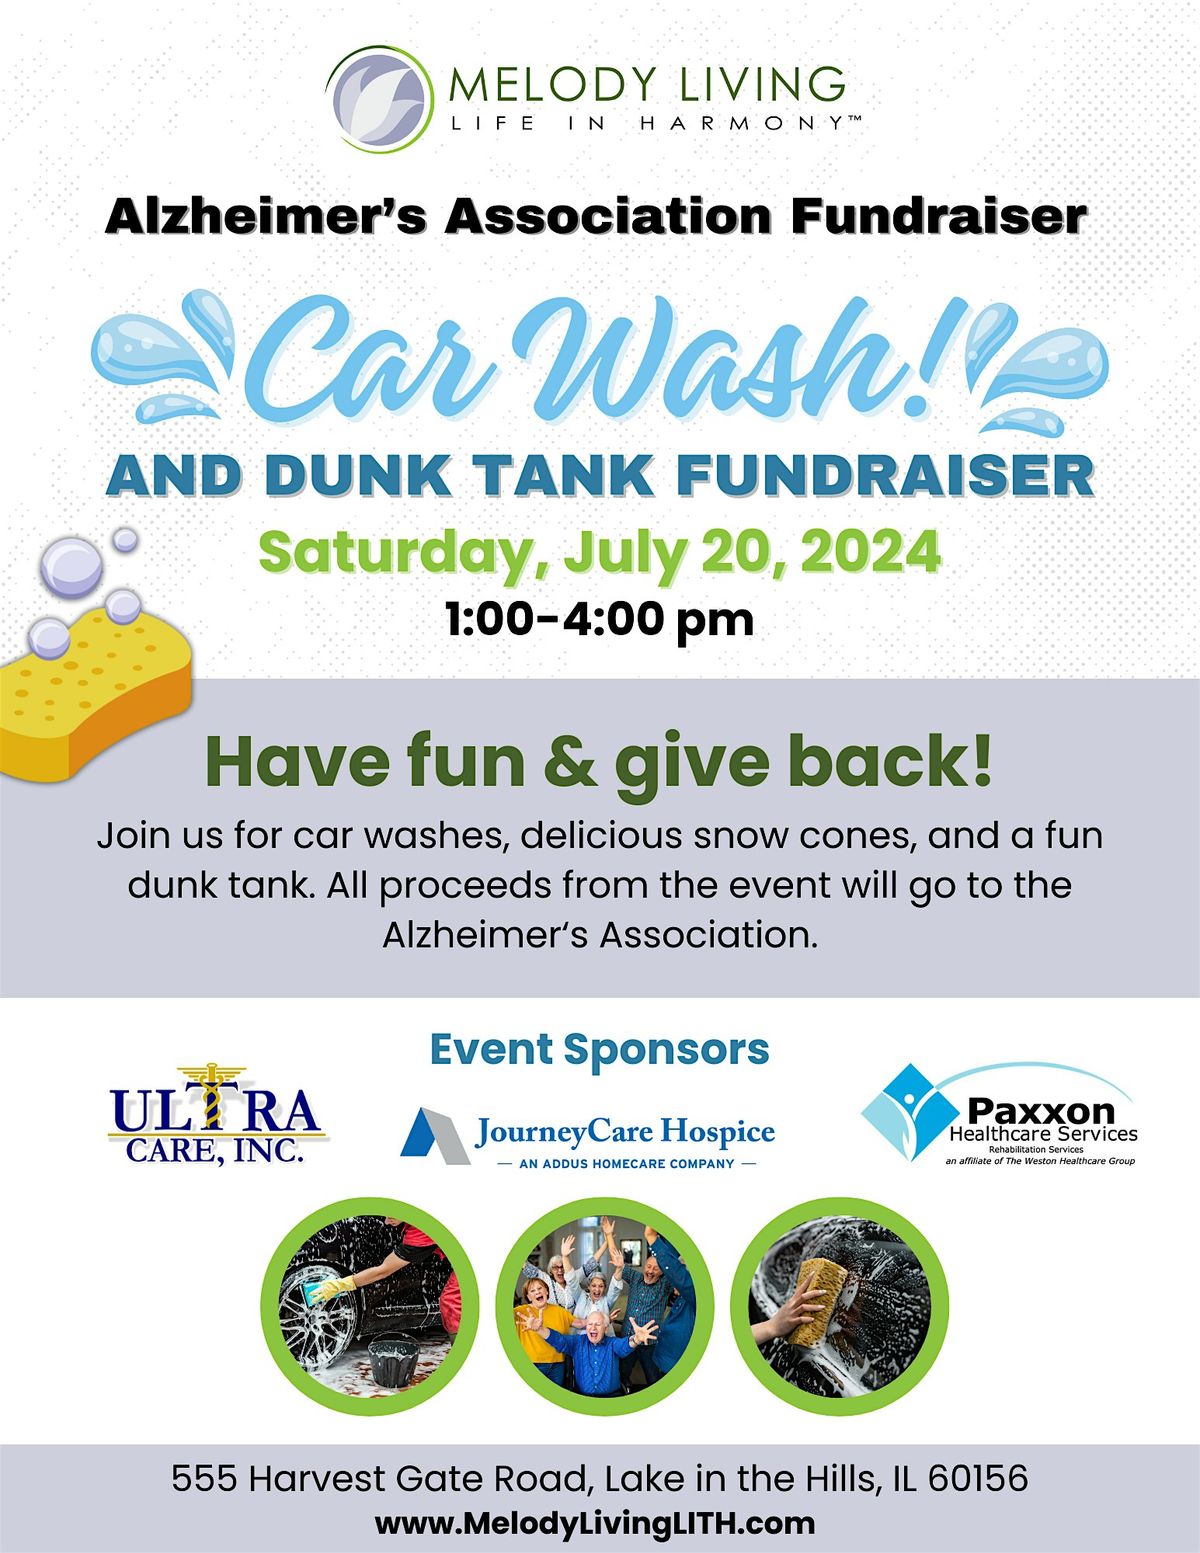 Alzheimer's Association Car Wash & Dunk Tank Fundraiser